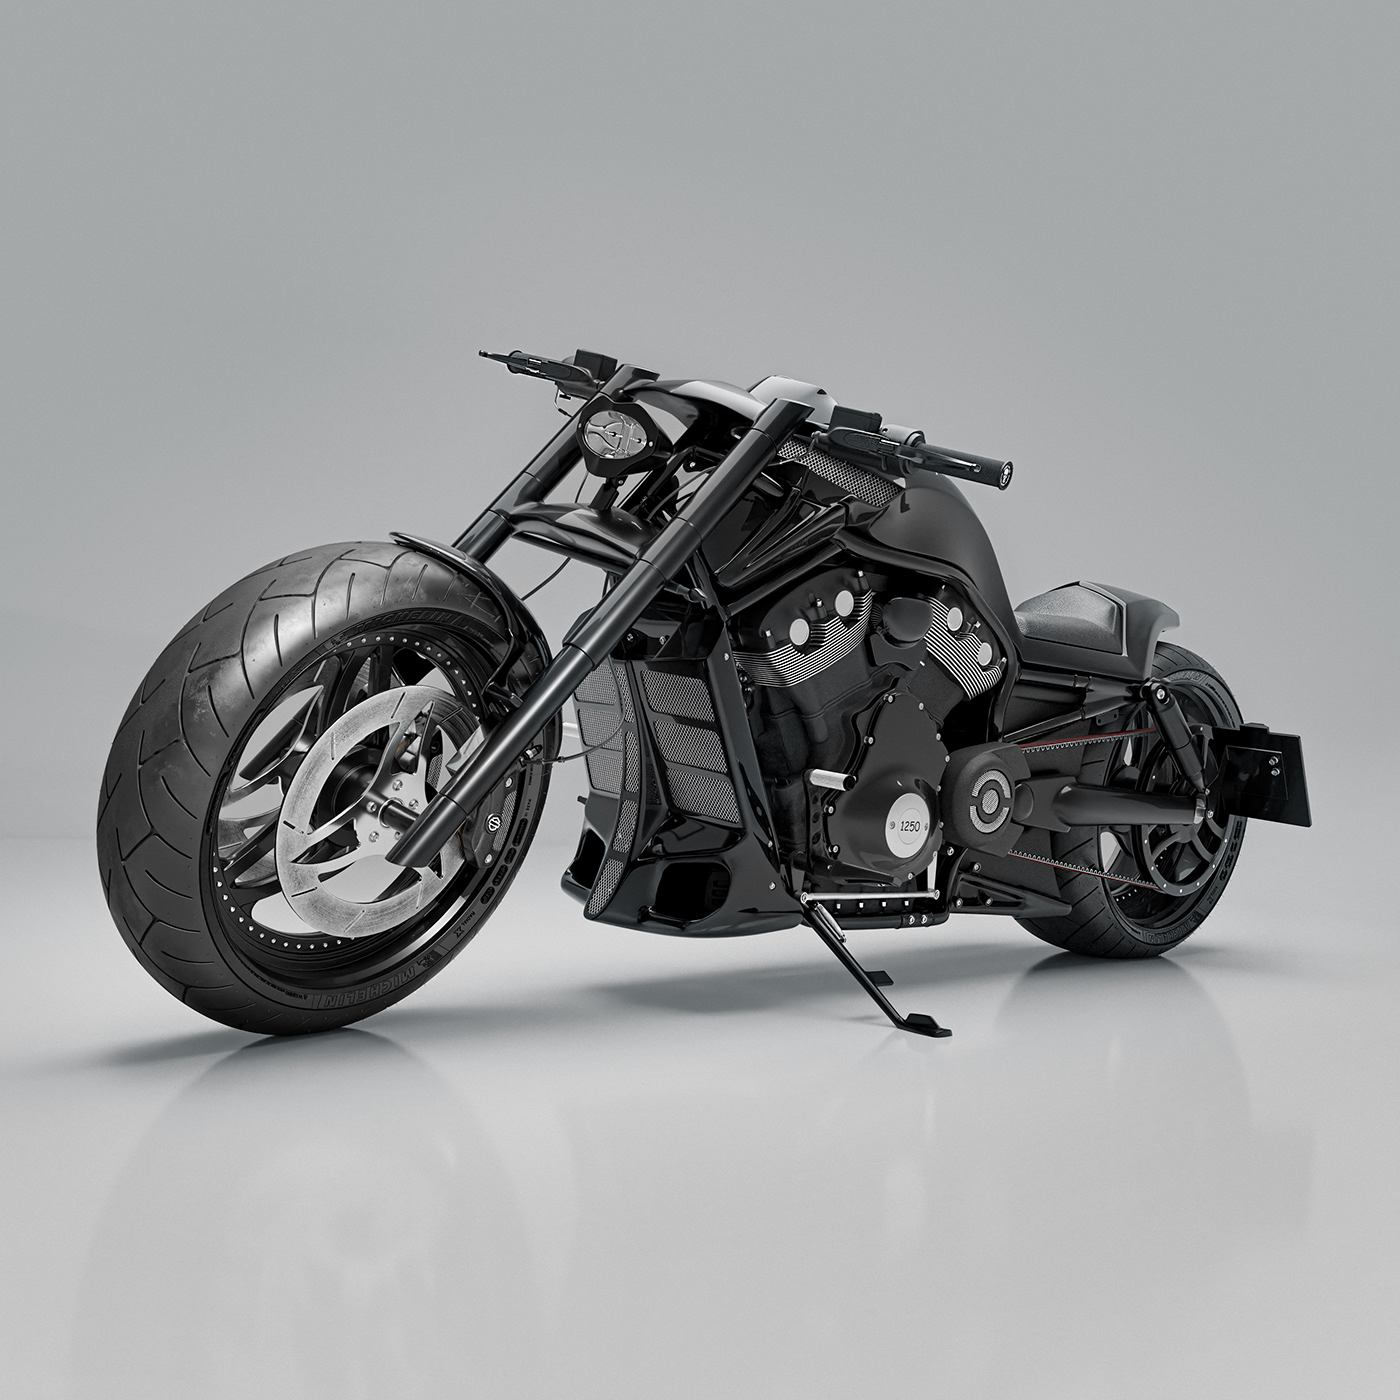 Harley Davidson CGI 3D automotive   Vehicle motorcycle blender model Render visualization